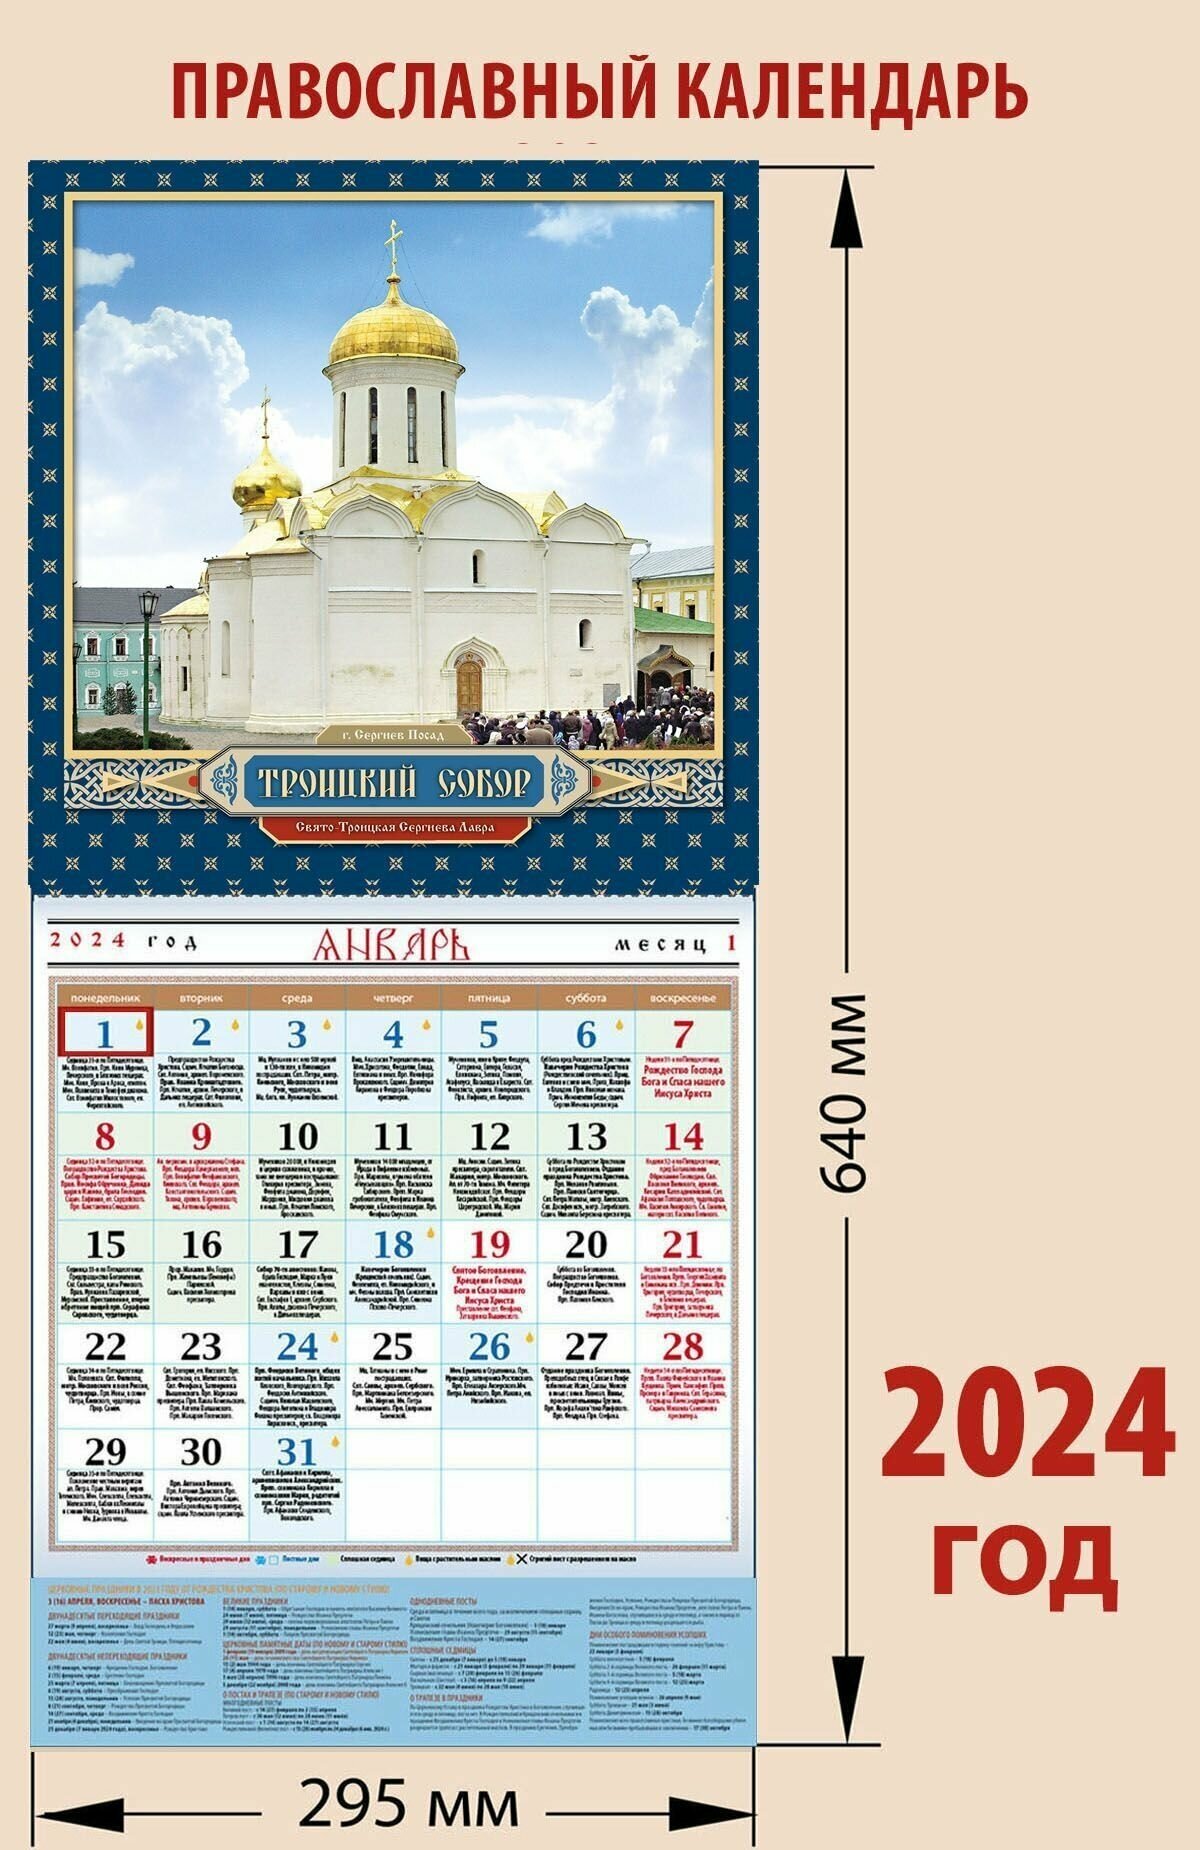 Календарь православный на 2024 год с постером "Троицкий собор. Троице-Сергиева Лавра"с праздниками на каждый день